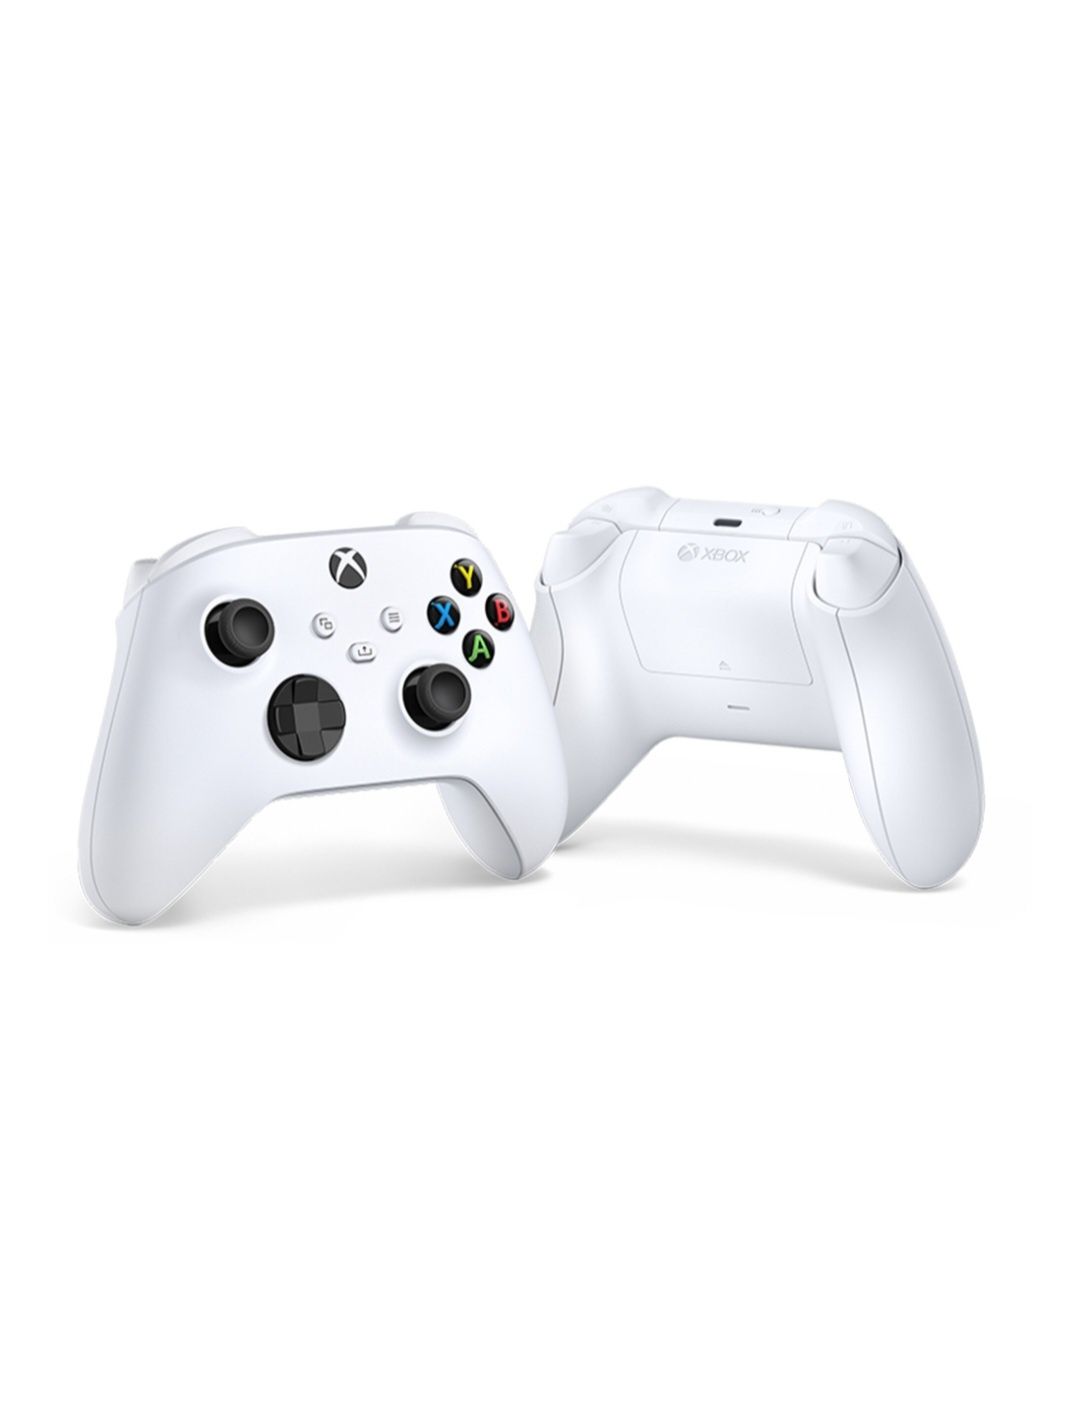 NOWY Pad Xbox Series S / X biały oryginalny kontroler